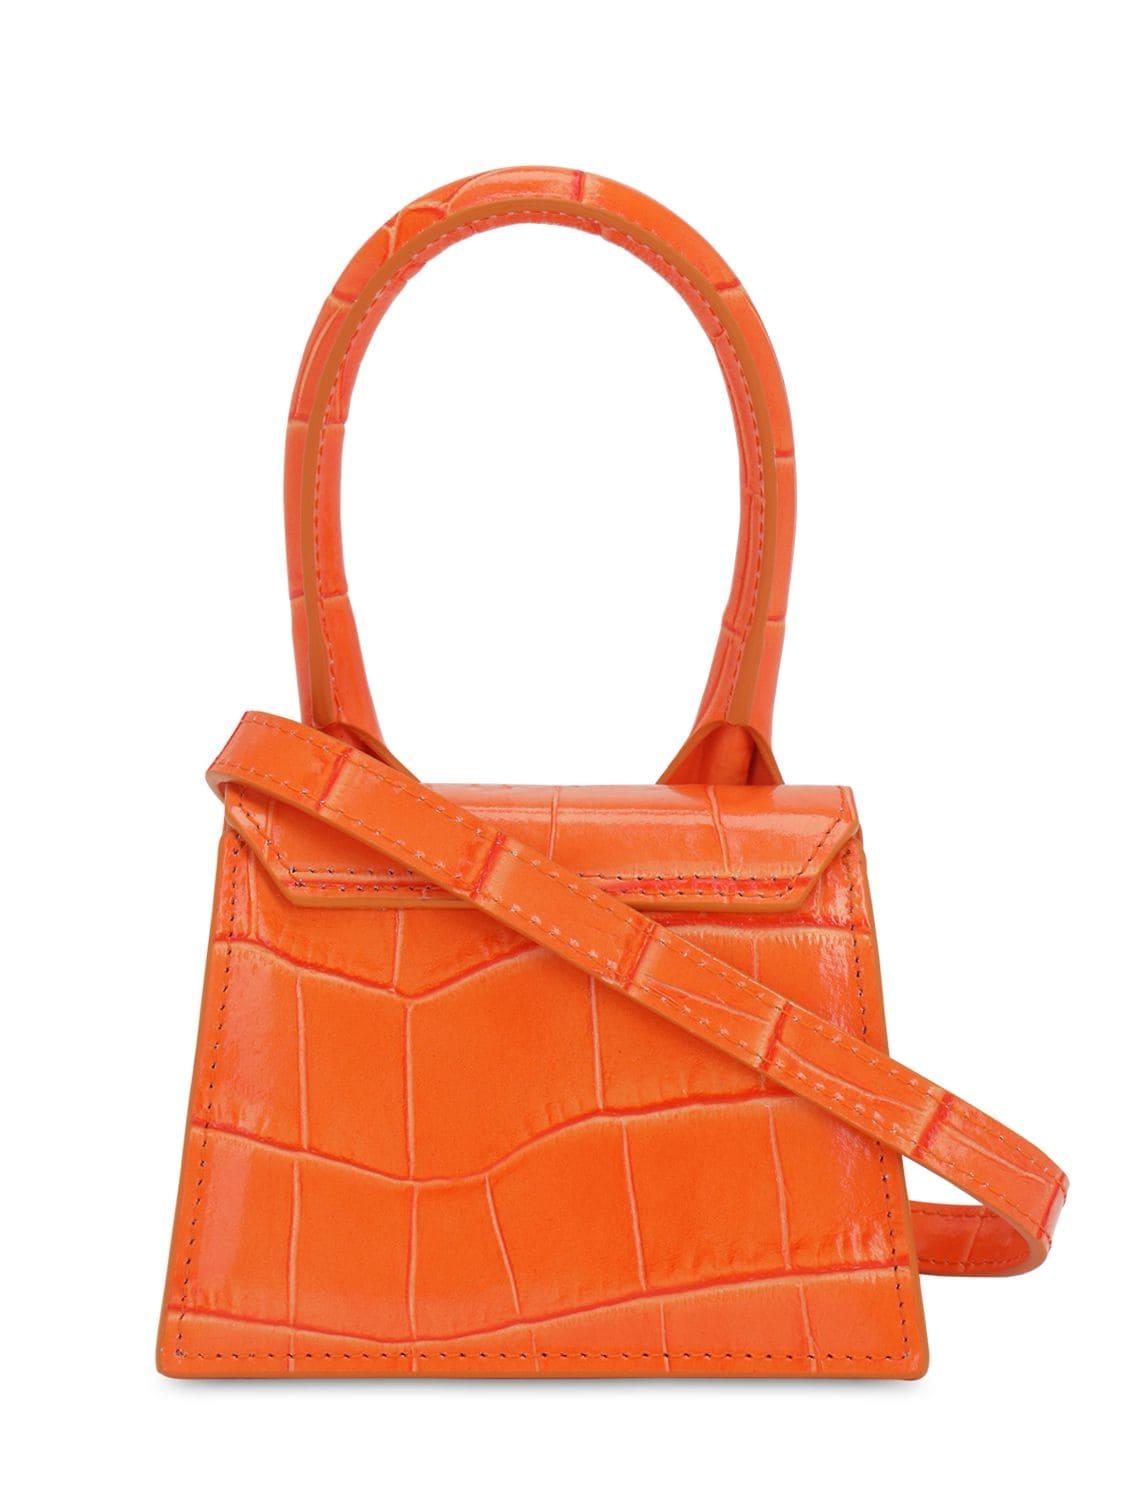 Jacquemus Le Chiquito Croc Print Leather Bag in Orange